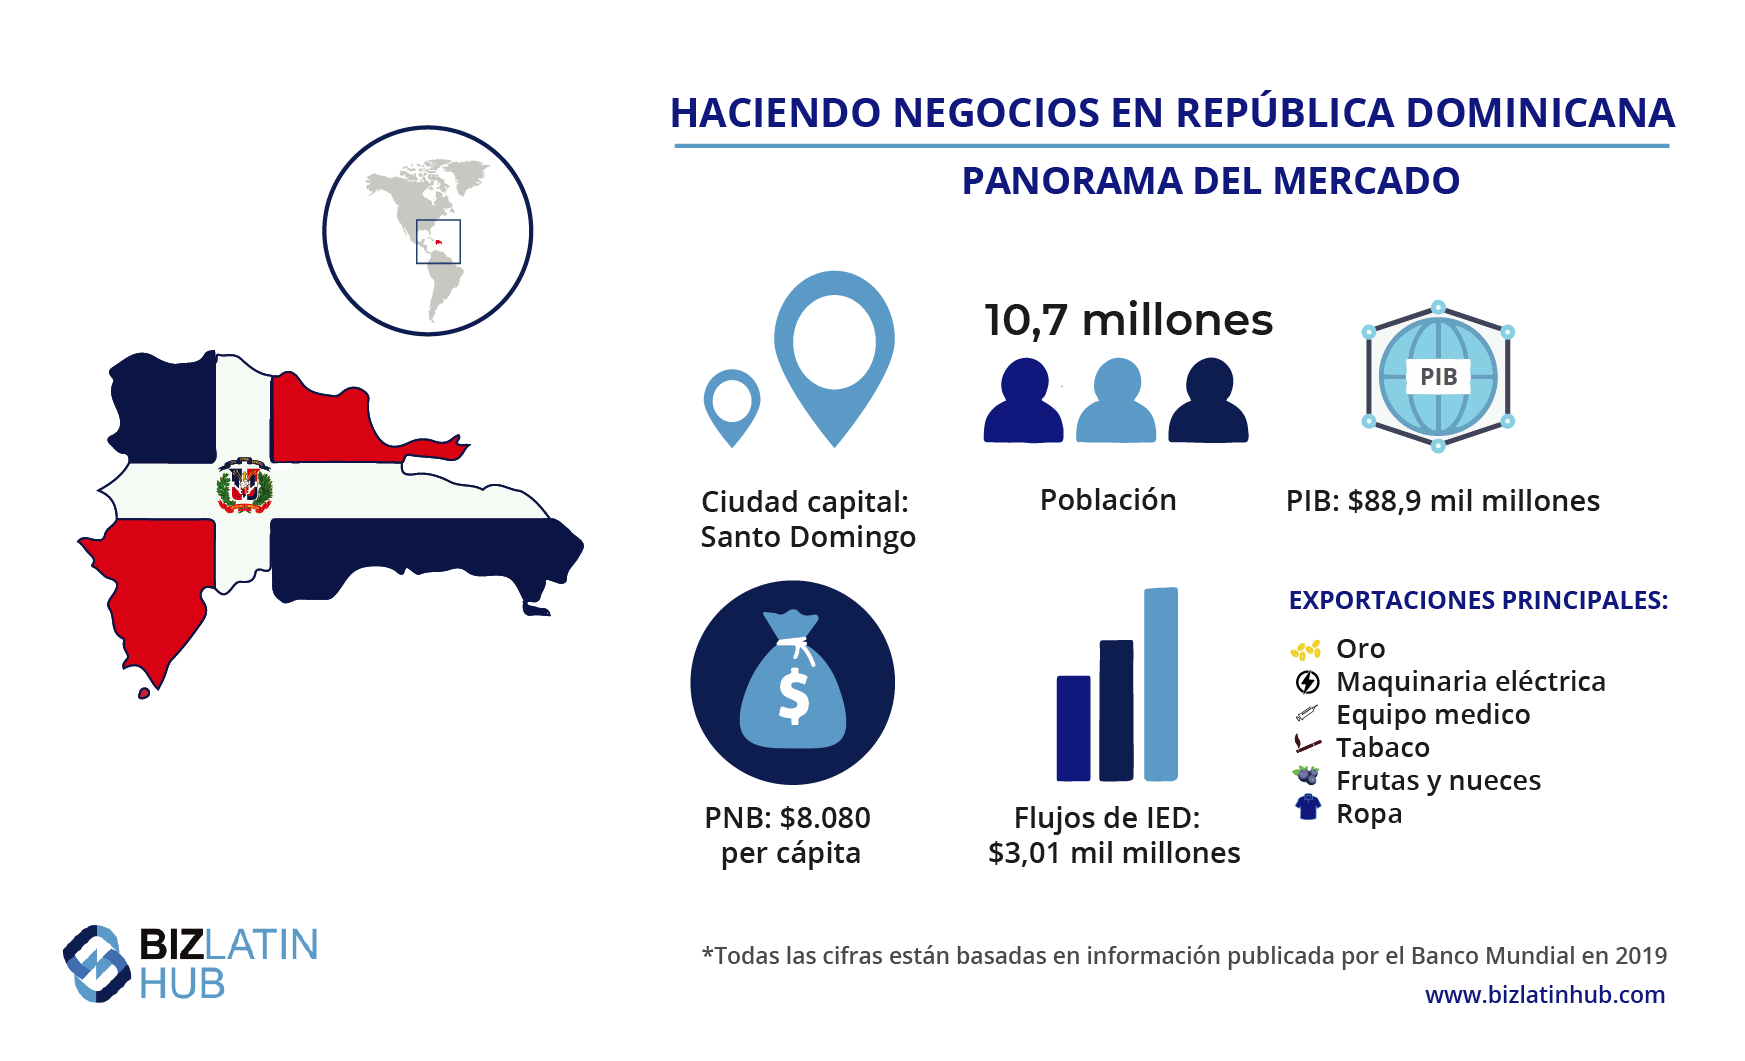 Panorama de negocios de Republica Dominicana, información importante para cualquiera pensando en hacer una Revisión de Cumplimiento Corporativo en República Dominicana.